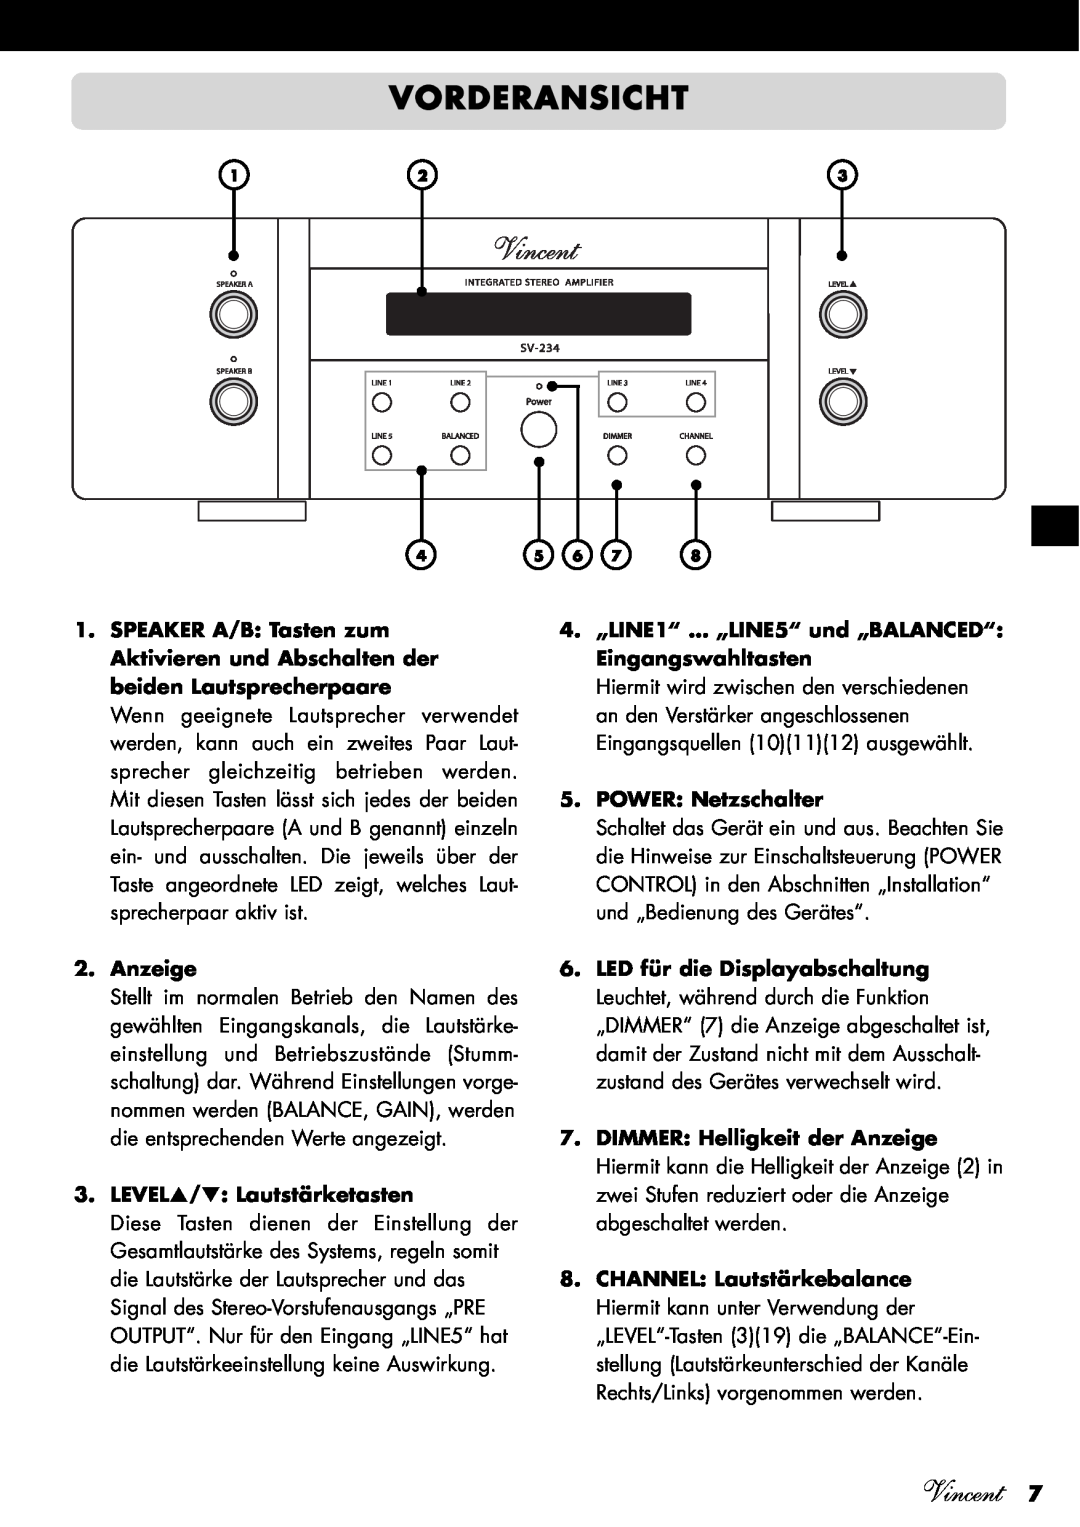 Vincent Audio SV-234 manuel dutilisation Vorderansicht, Anzeige, LEVEL/ Lautstärketasten, POWER Netzschalter, Vincent 